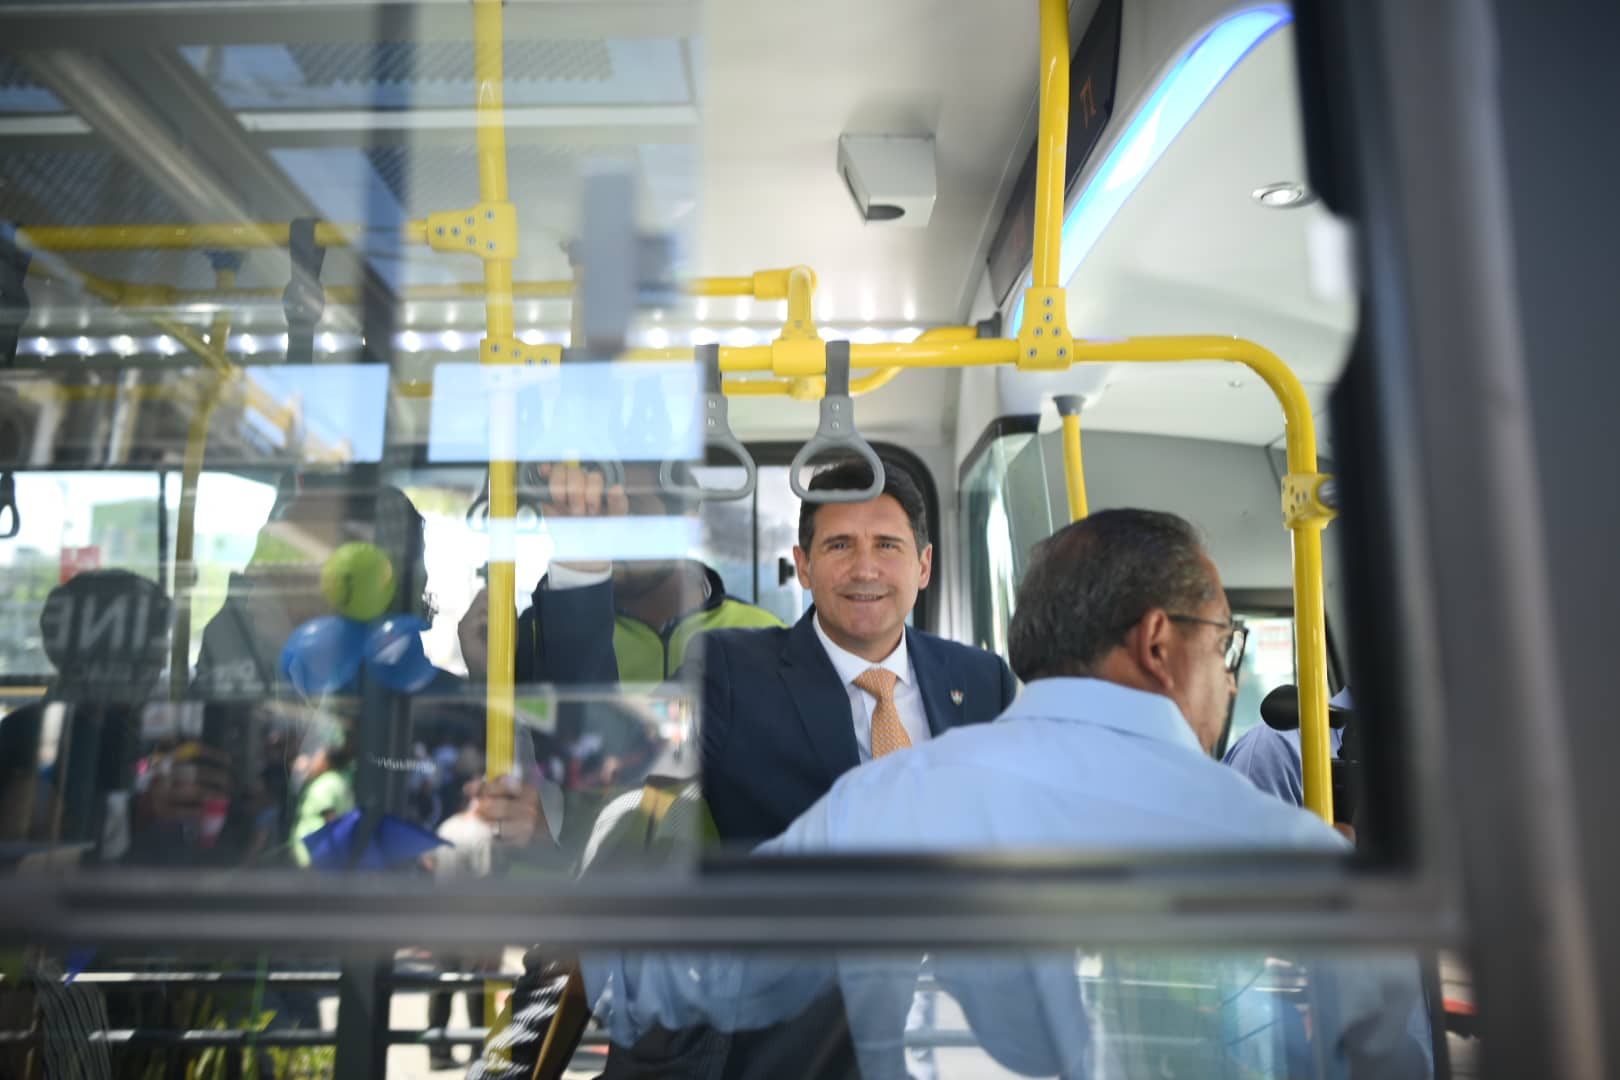 La Línea 7 del Transmetro transportará a 60 mil personas diarias